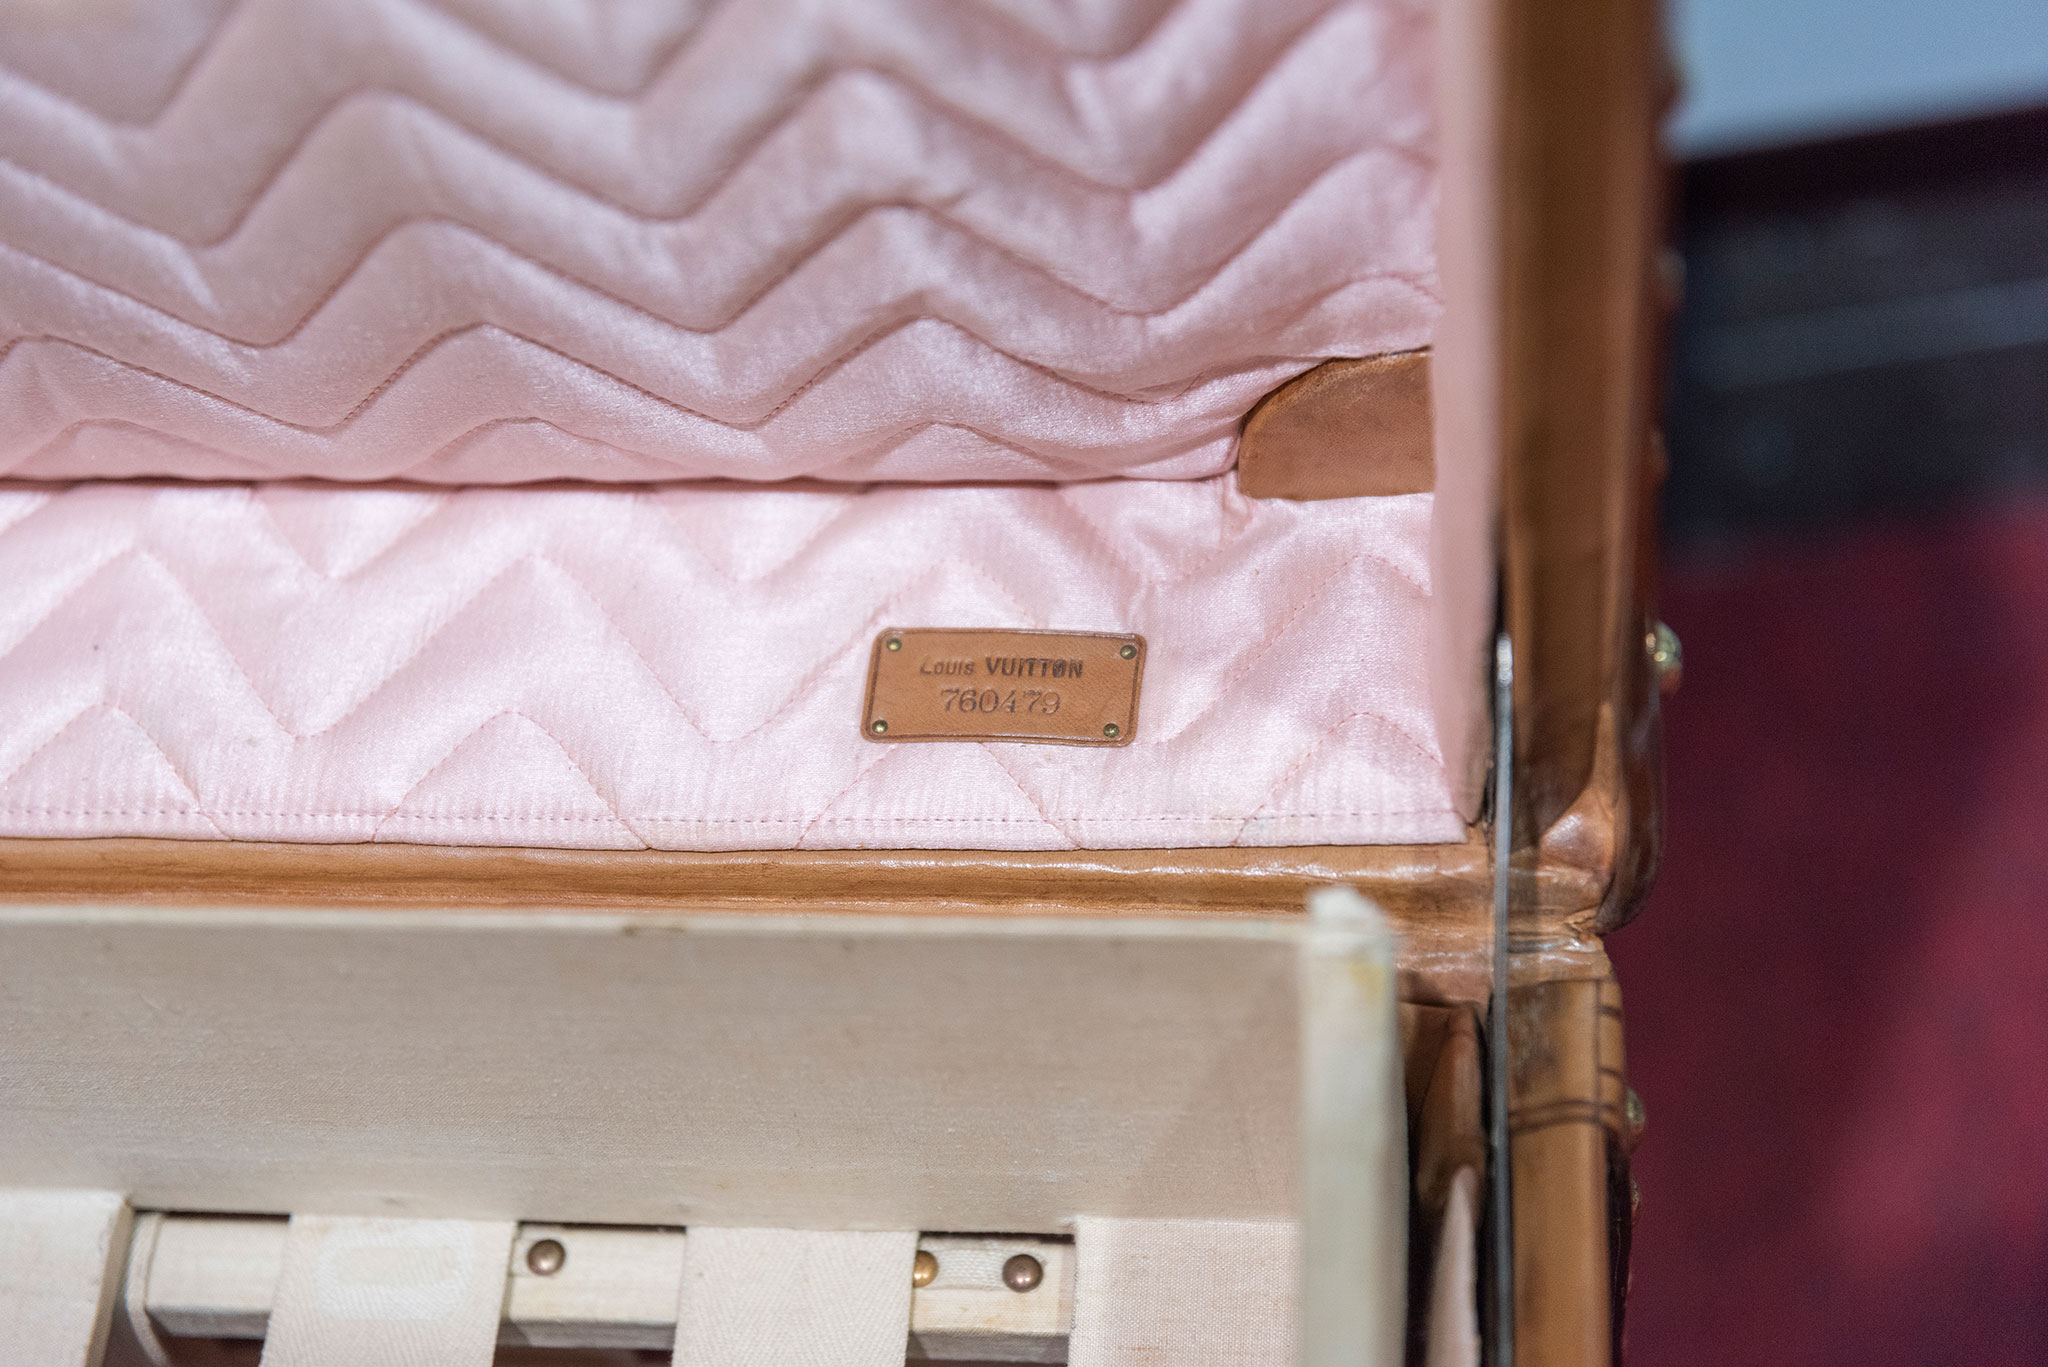 Très rare étiquette en cuir avec numéro de série pour cette malle unique Louis Vuitton - Bagagerie Vintage.